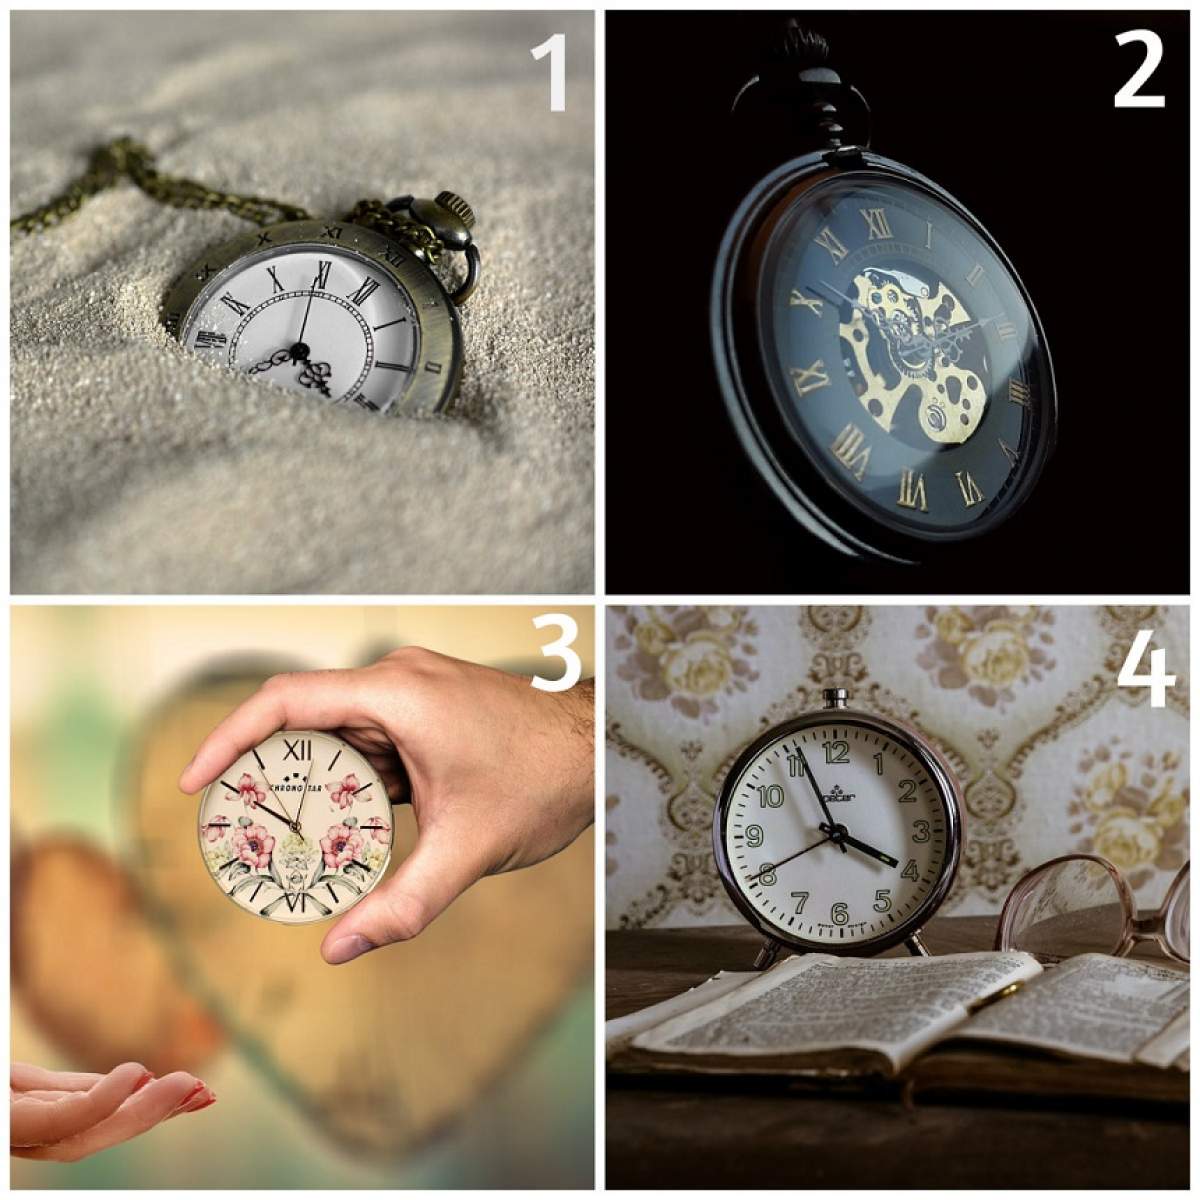 FOTO / TEST: Alege un ceas din cele 4 și află la ce vârstă vei muri și în ce circumstanțe